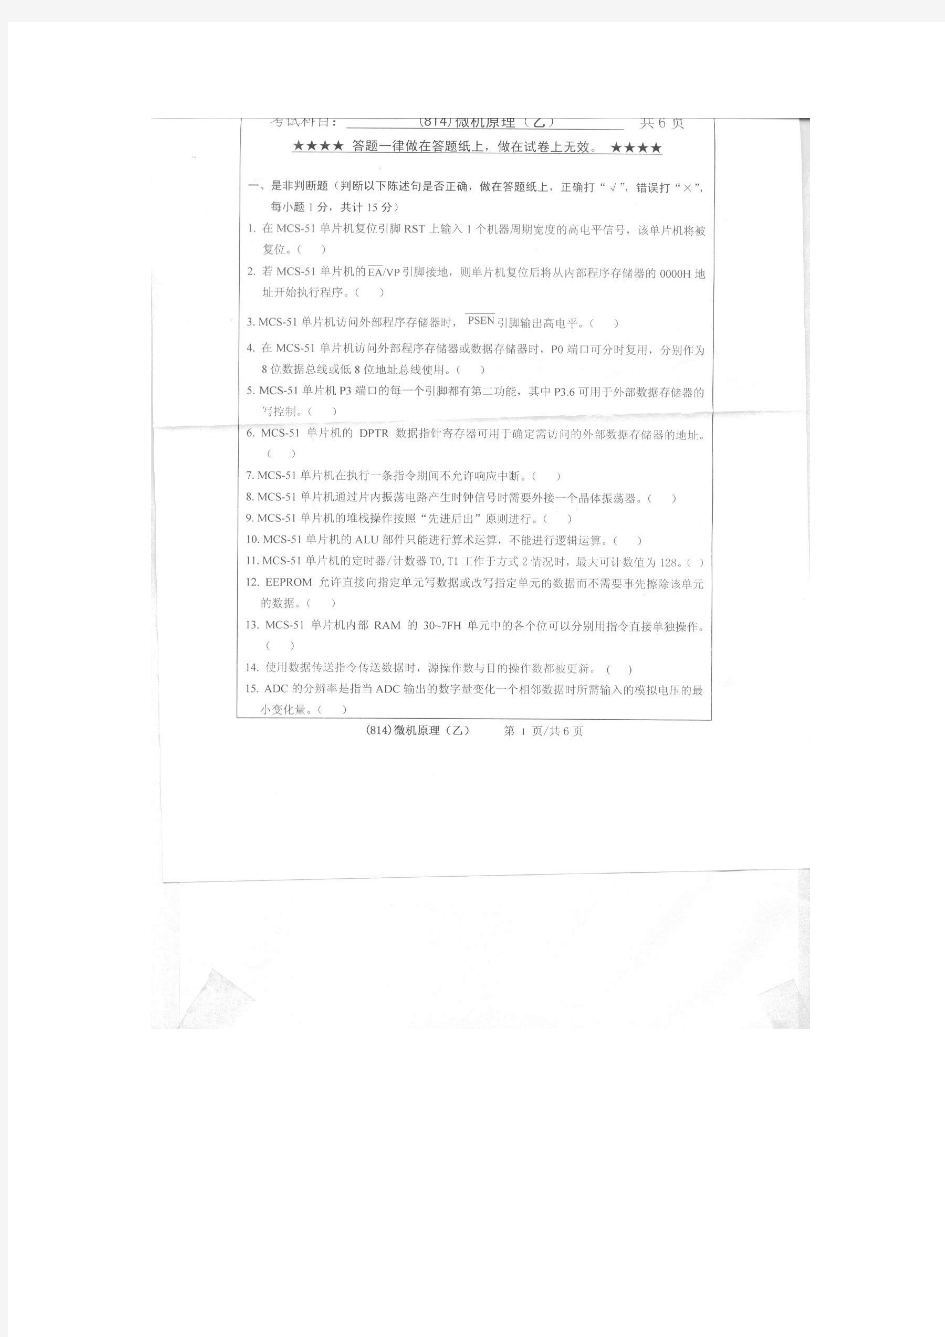 浙江工业大学2011年考研真题(814)微机原理(乙)